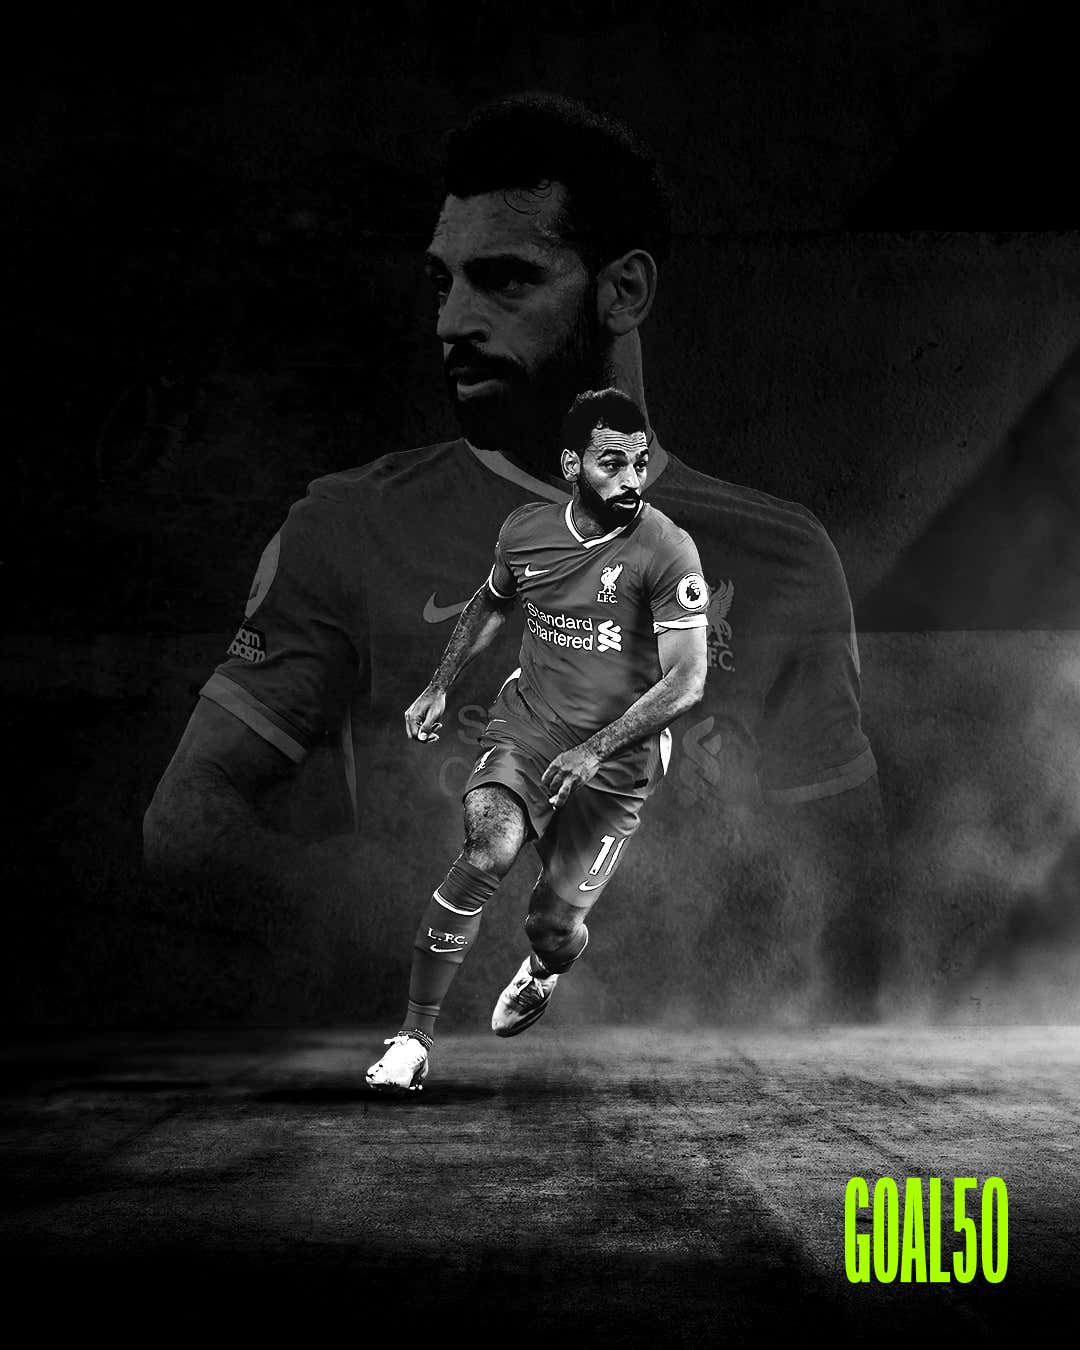 Mohamed Salah Goal 50